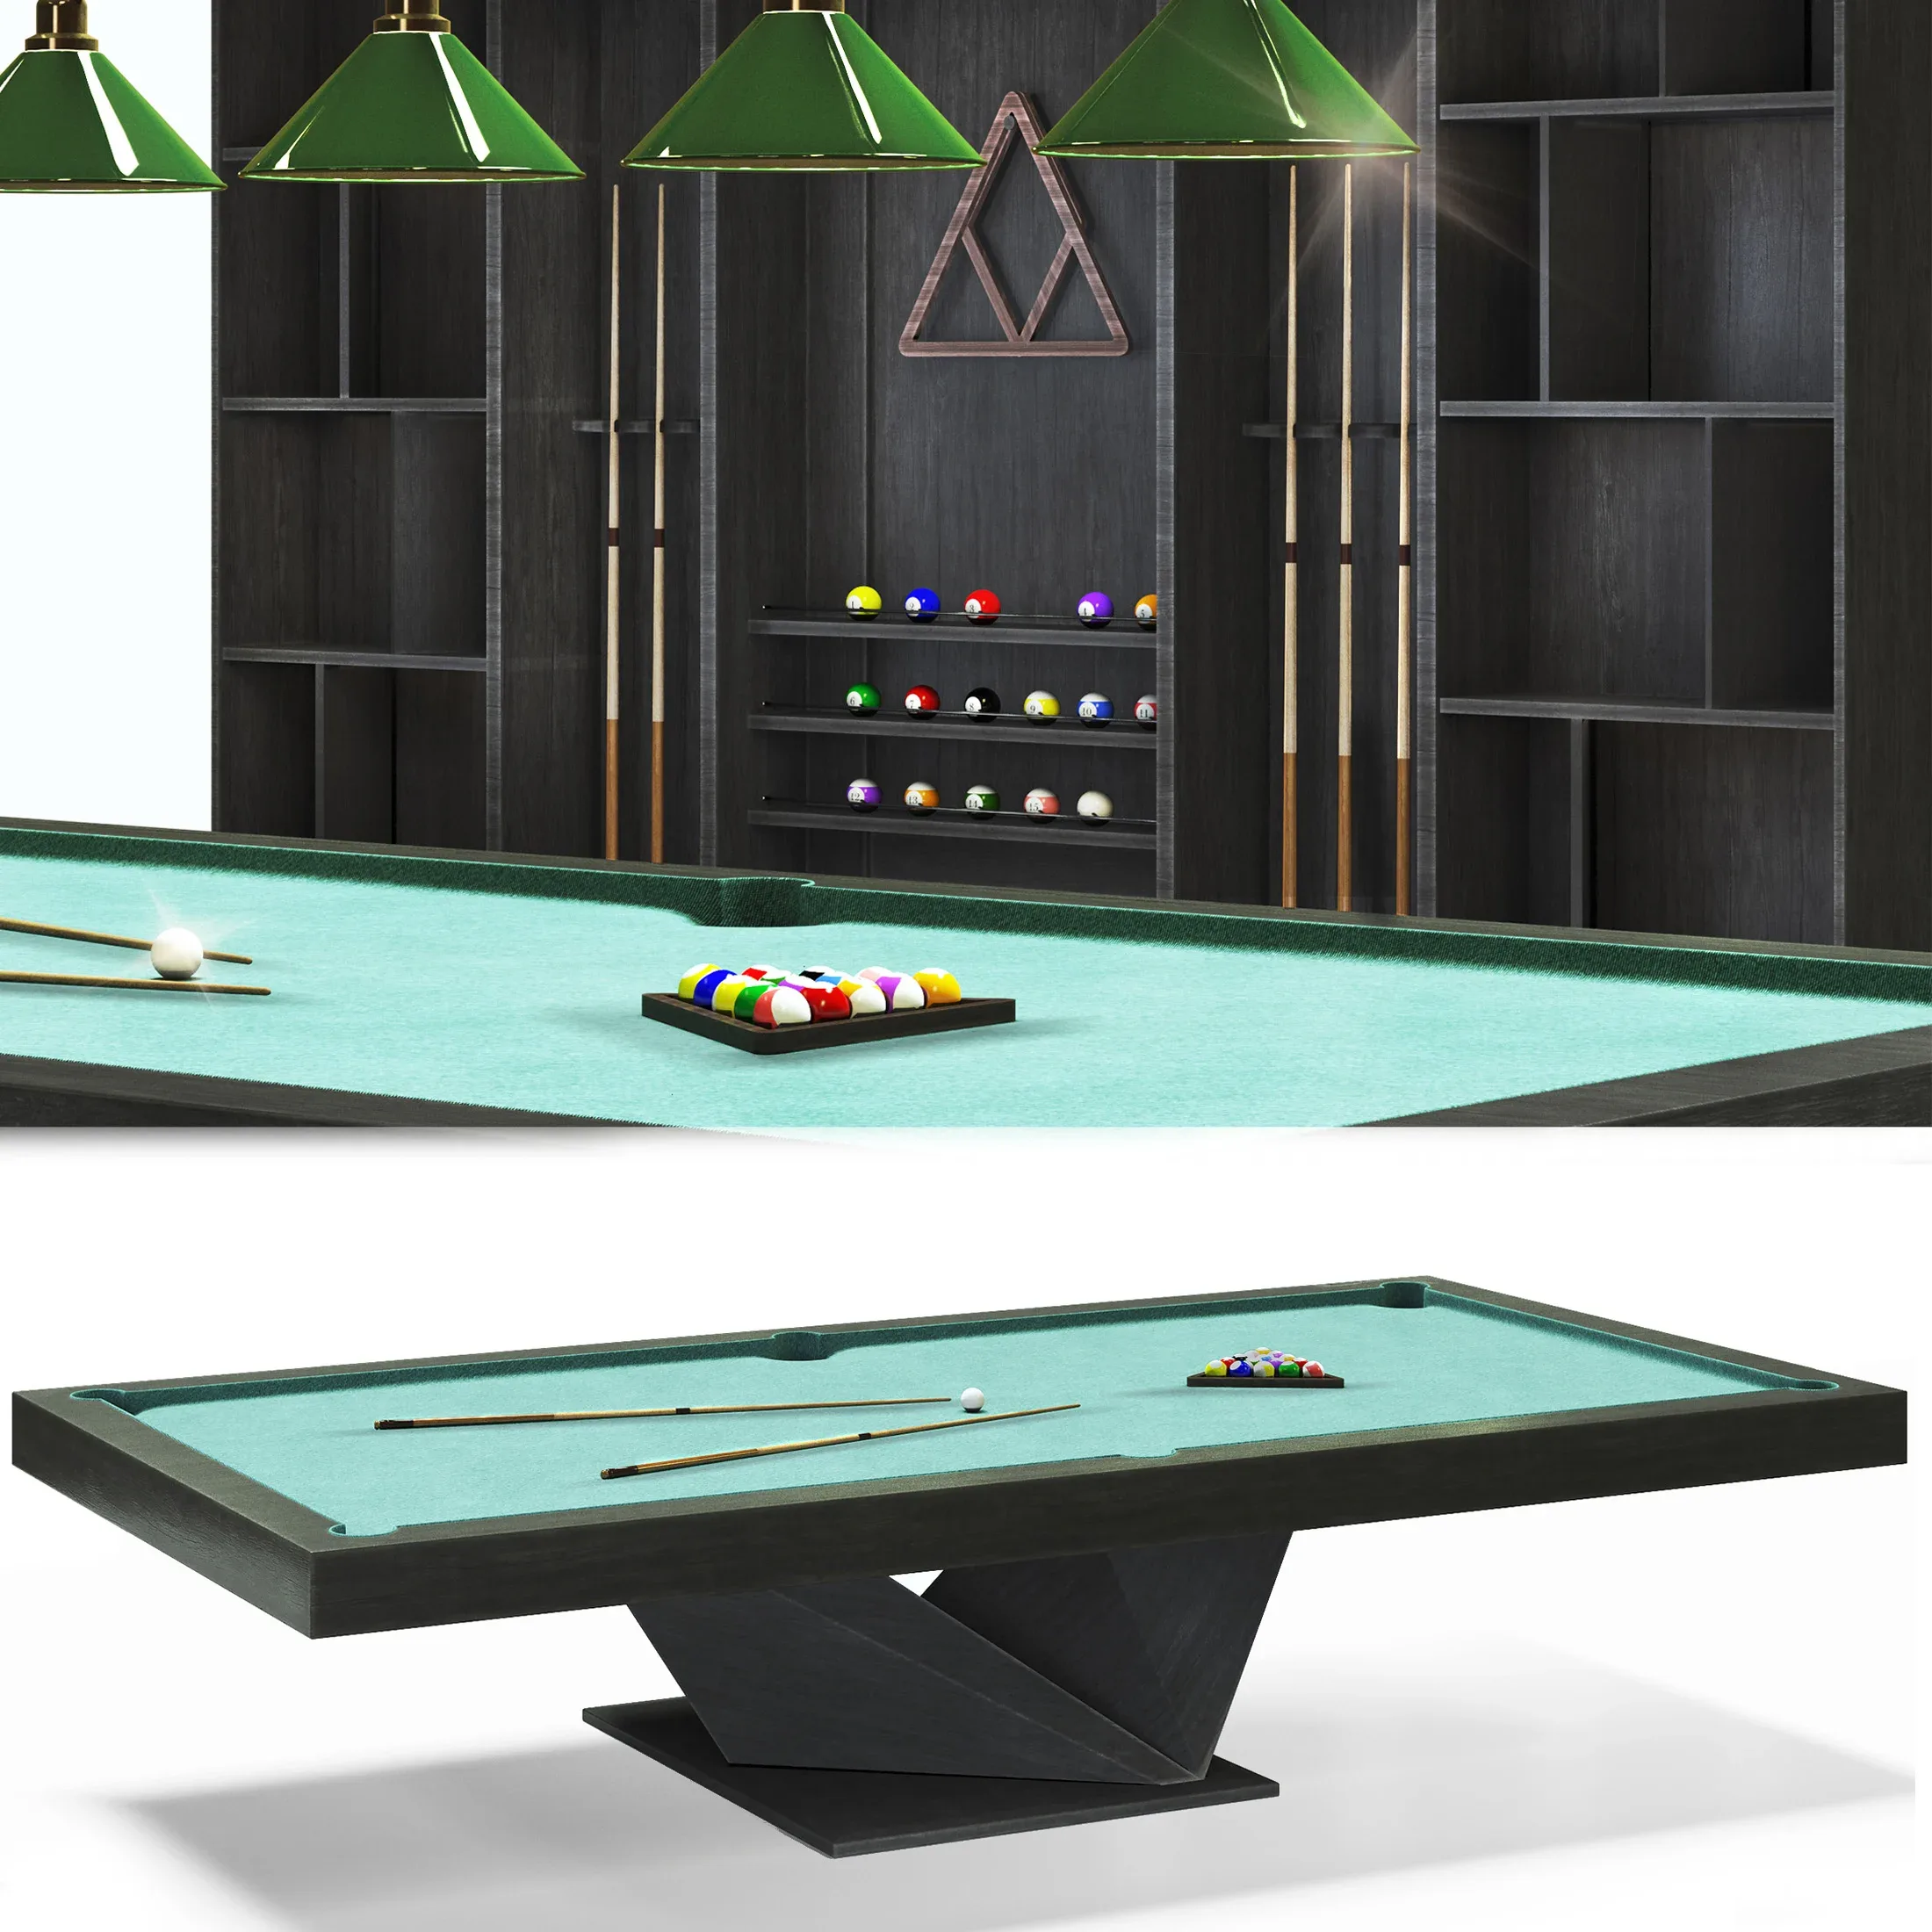 Billiard room set, pool table